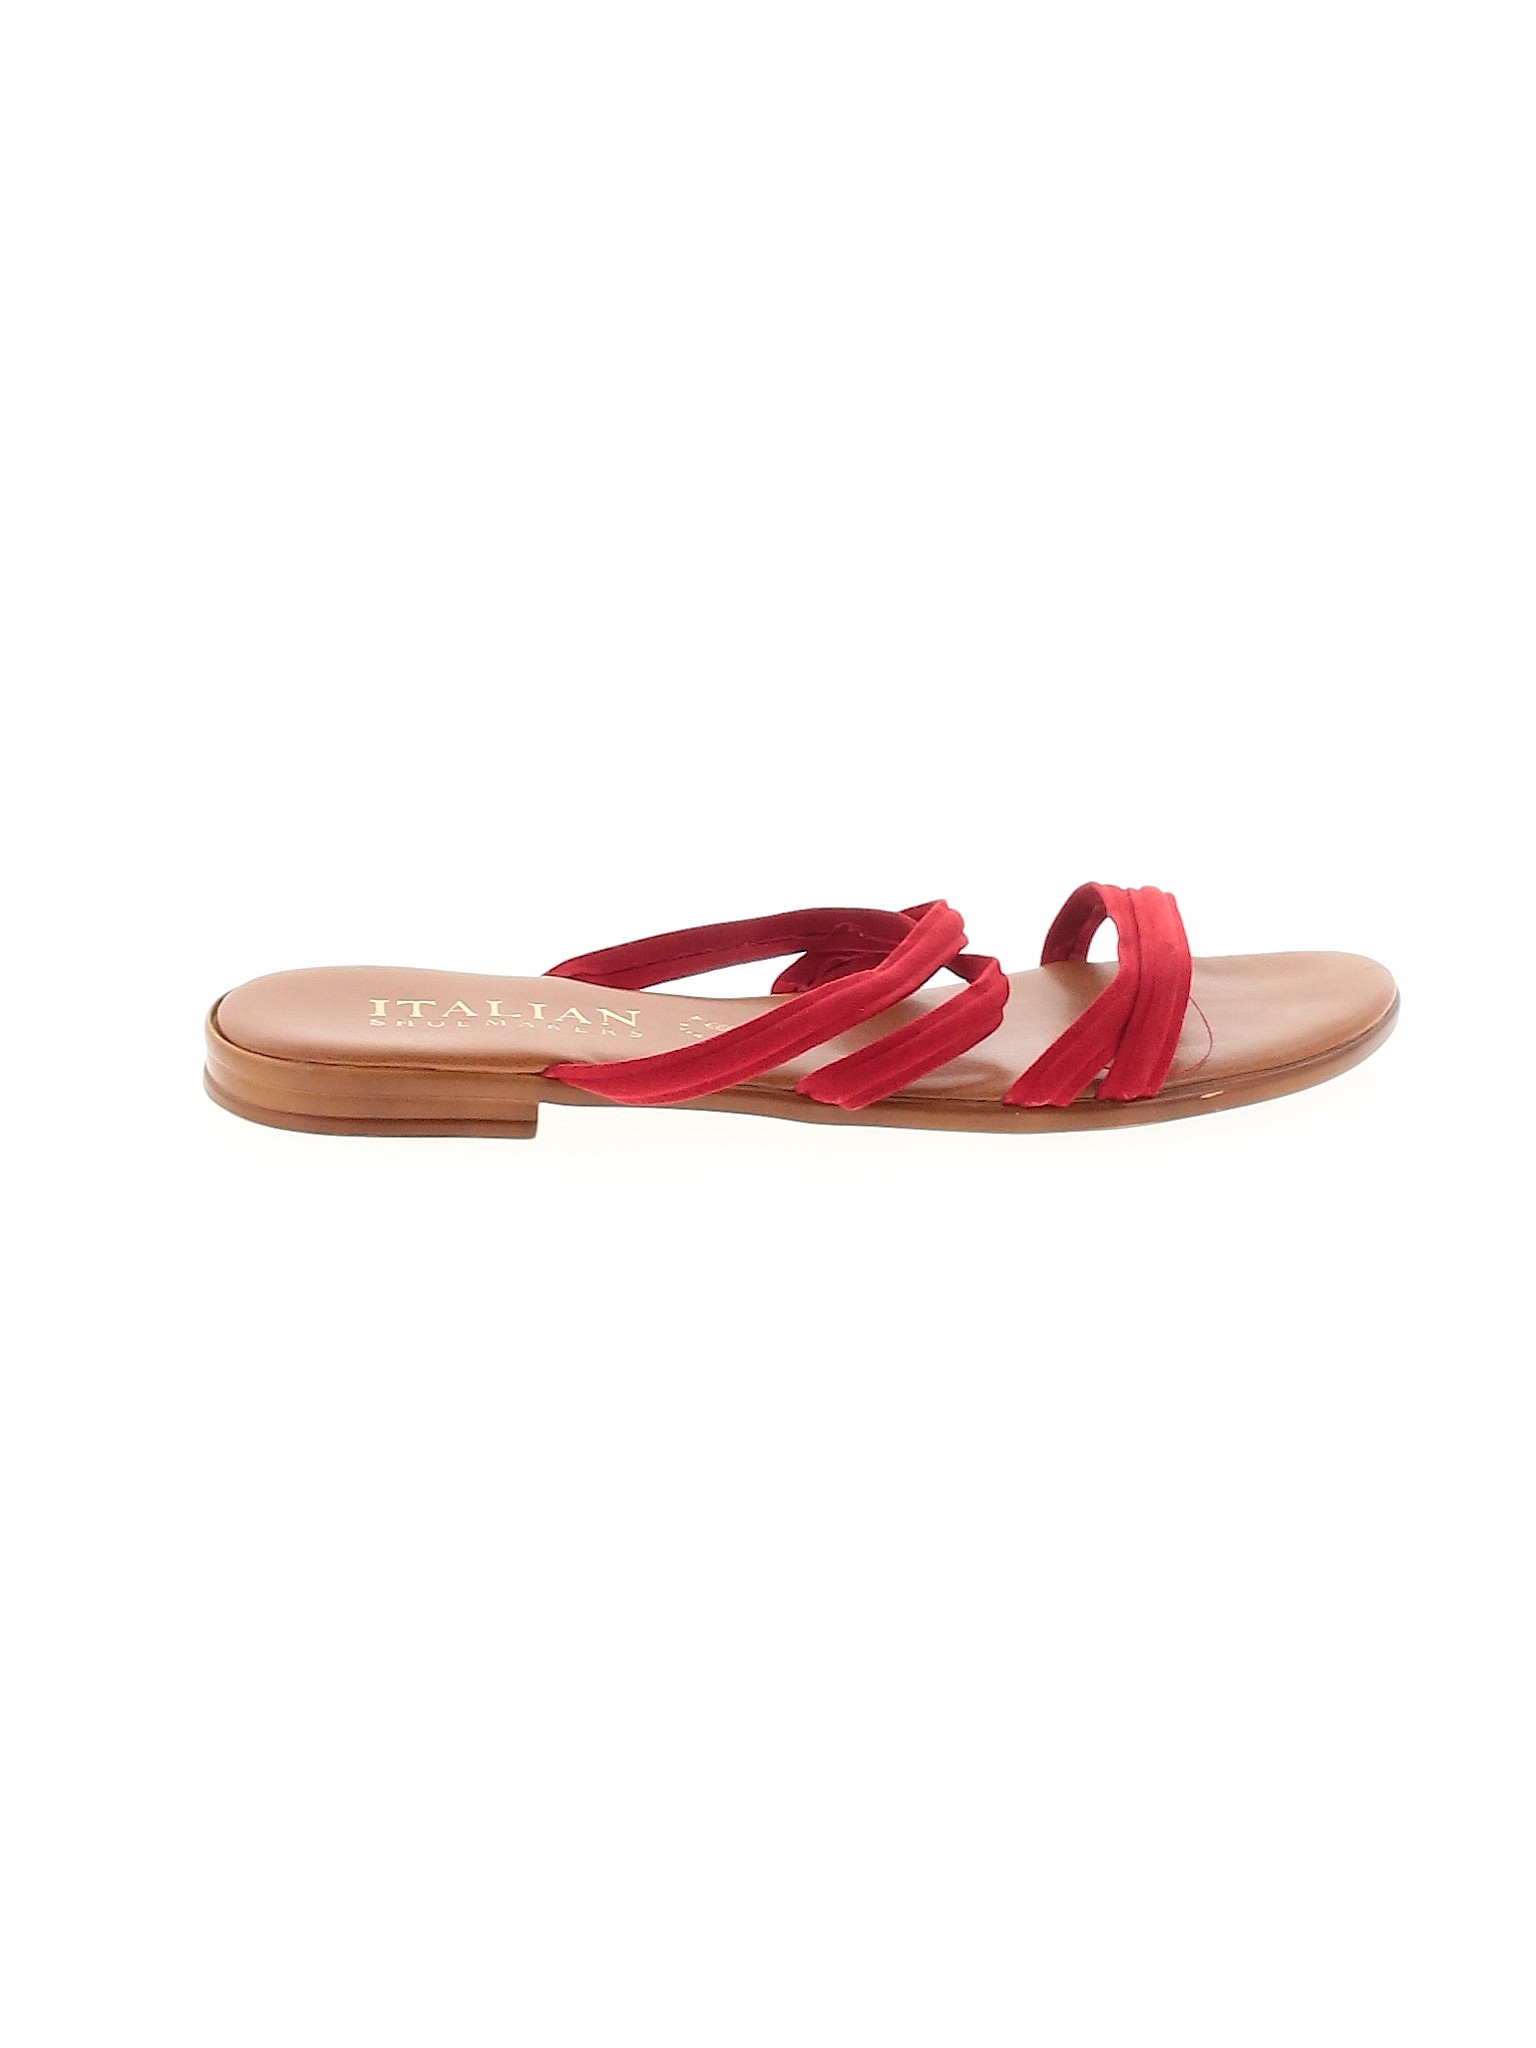 Italian Shoemakers Calzado Mujer Rojo 